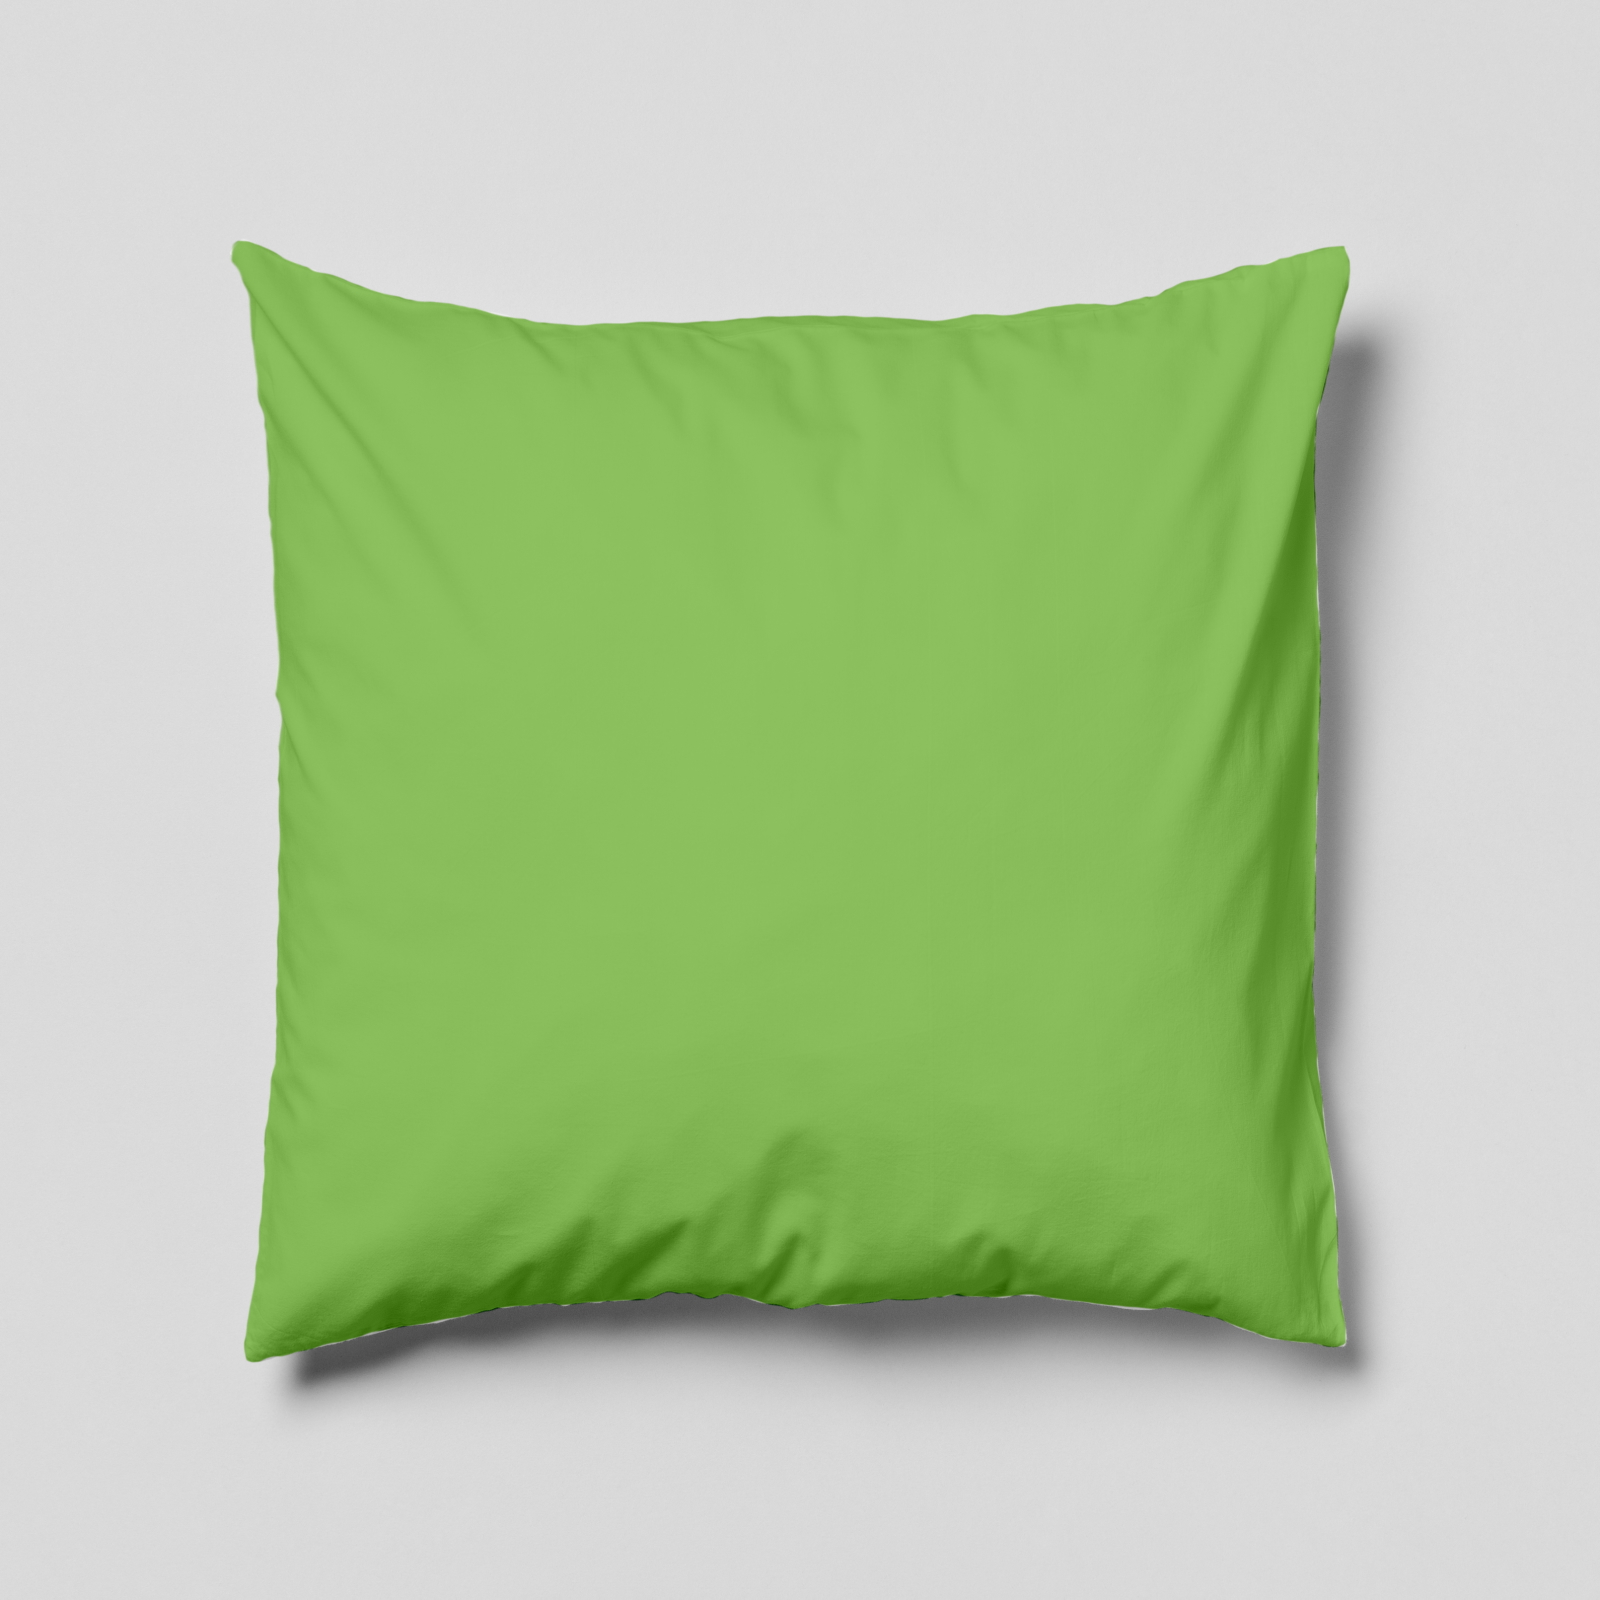 Komplettkissen Polyester-Hellgrün / 50x50 cm